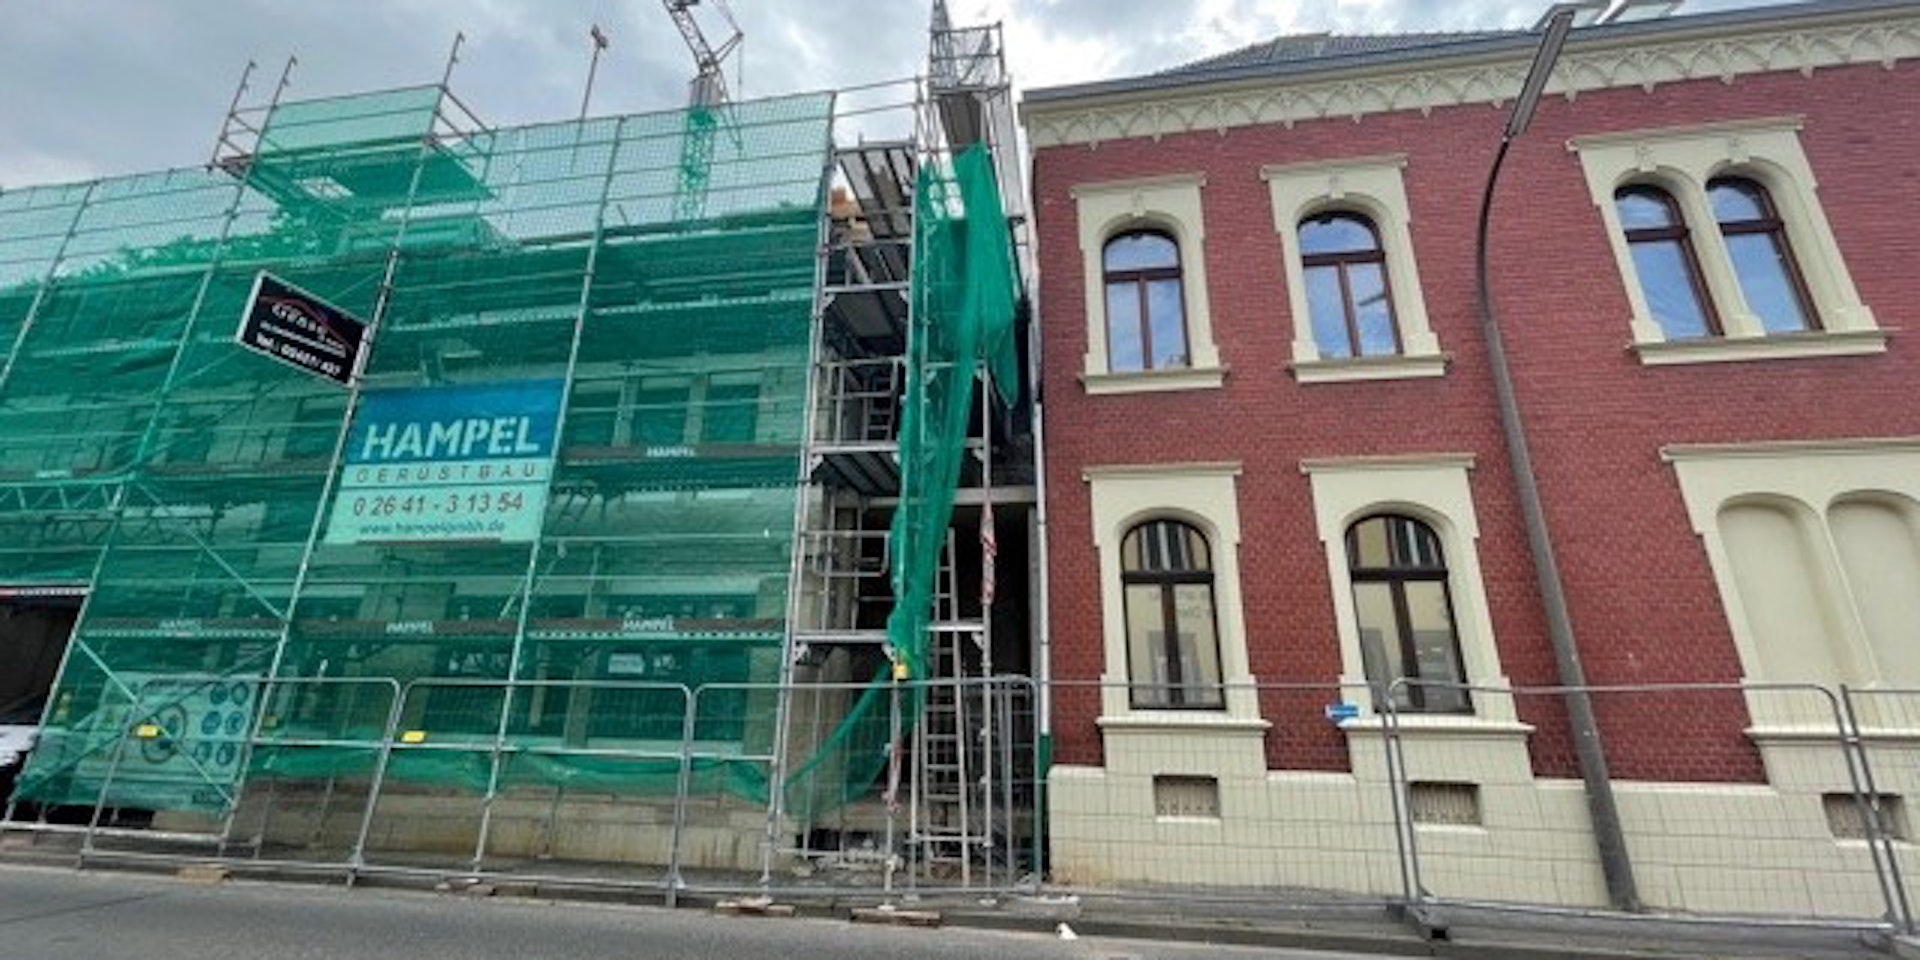 Die Bauarbeiten in Lechenich schreiten voran.